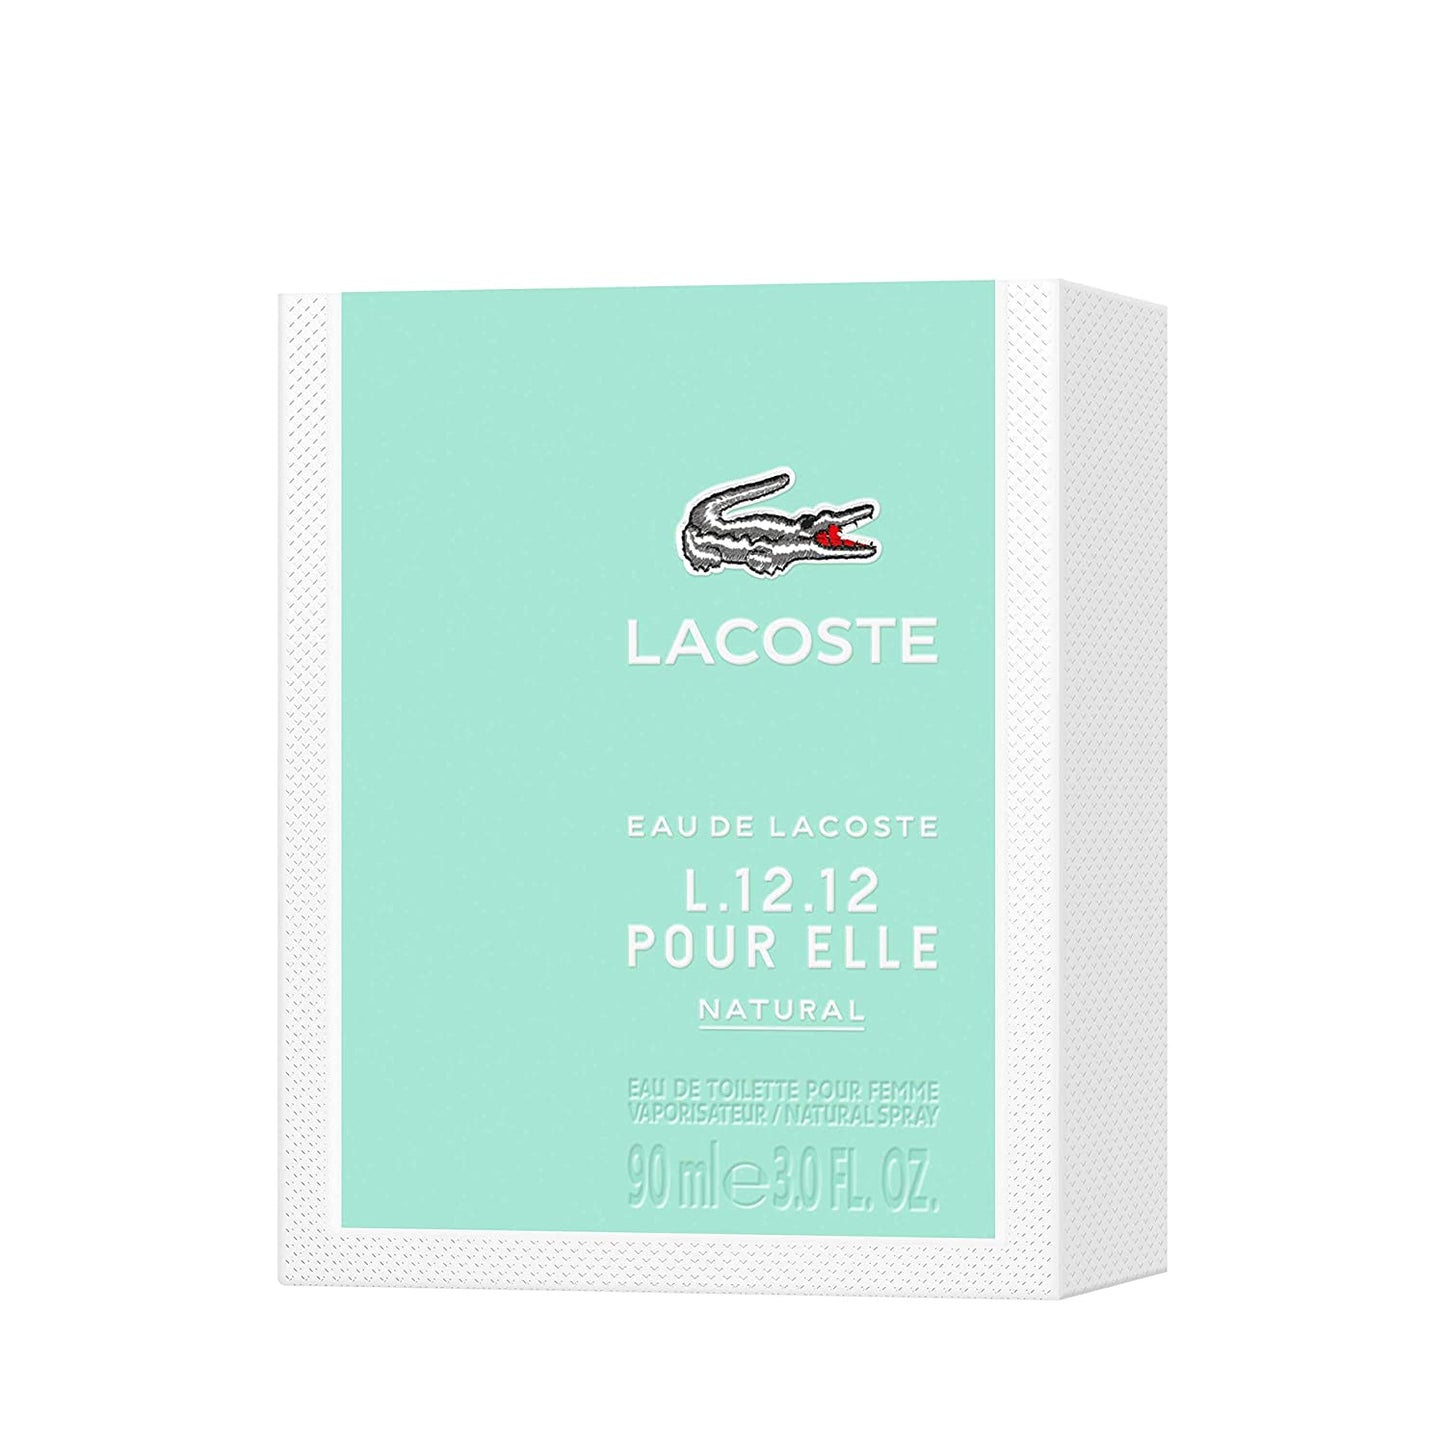 LACOSTE EAU DE LACOSTE L.2 POUR ELLE NATURAL BY LACOSTE FOR WOMEN - Eau De Toilette SPRAY